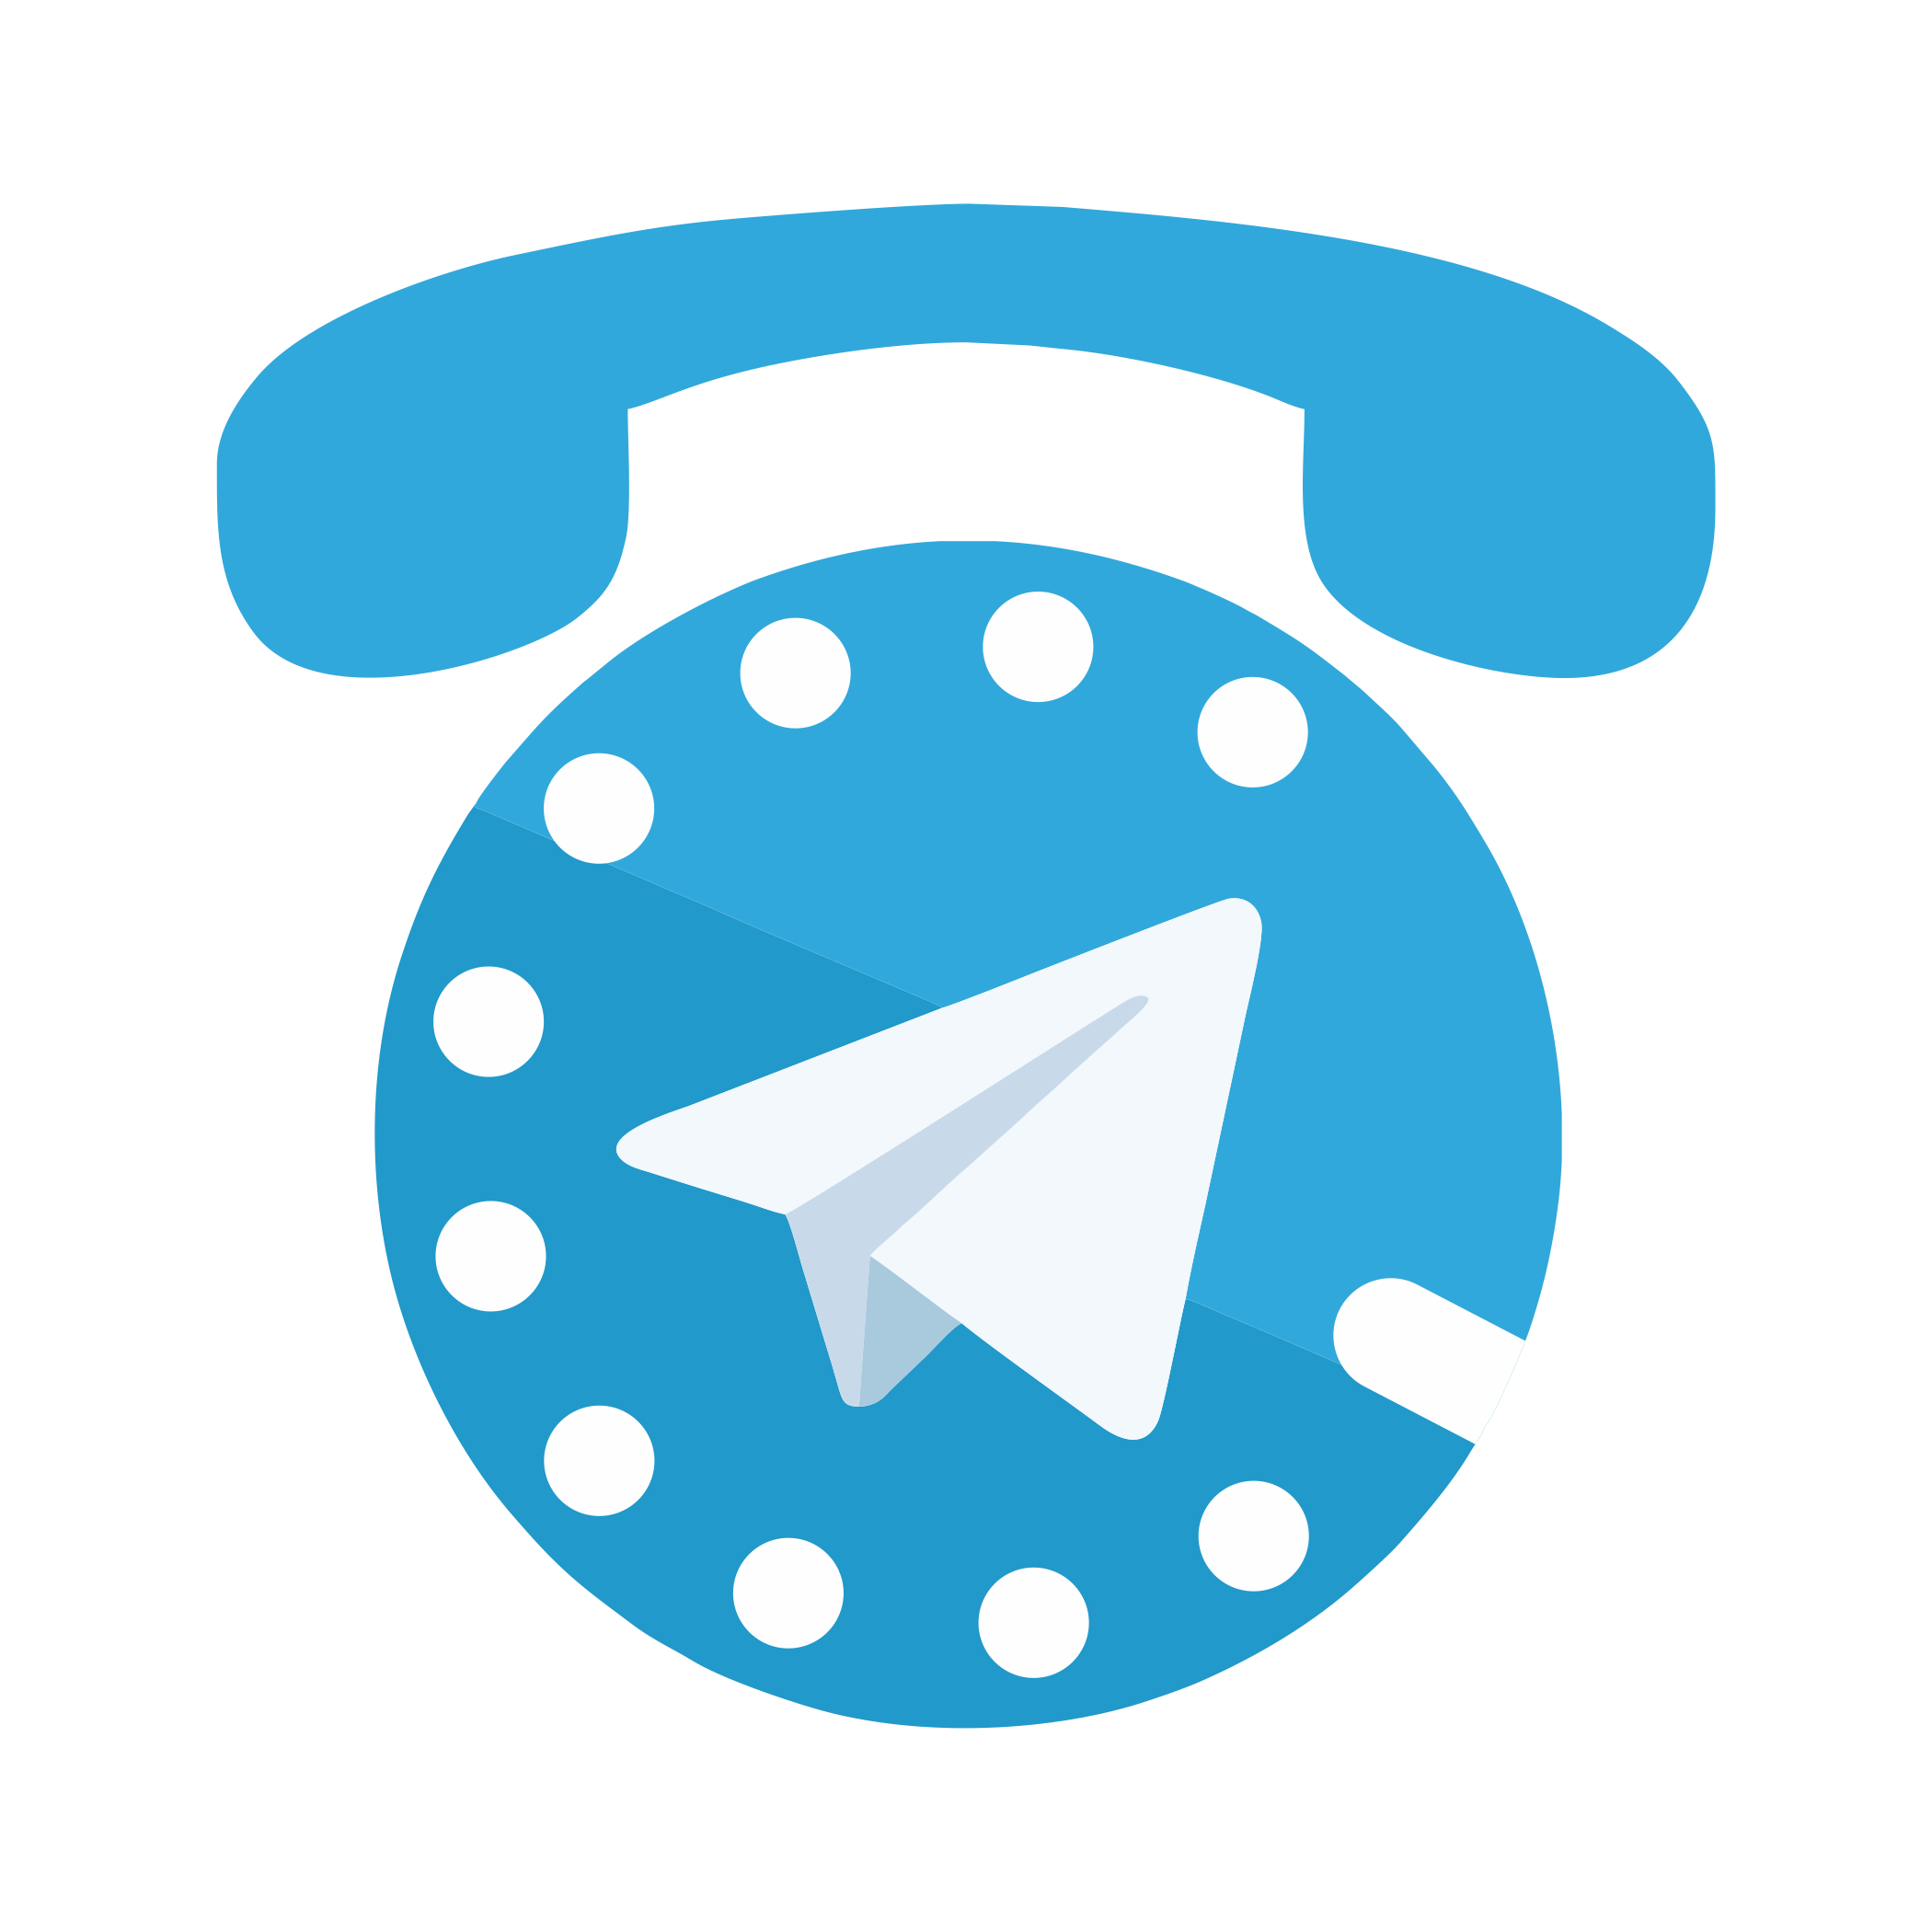 Бот позволяет использовать все возможности IP-телефонии из мессенджера Телеграм: звонить на городские и мобильные номера, принимать звонки на Ваш аккаунт Телеграм по SIP и звонить через SIP другим пользователям Телеграм. Сервис доступен бесплатно.